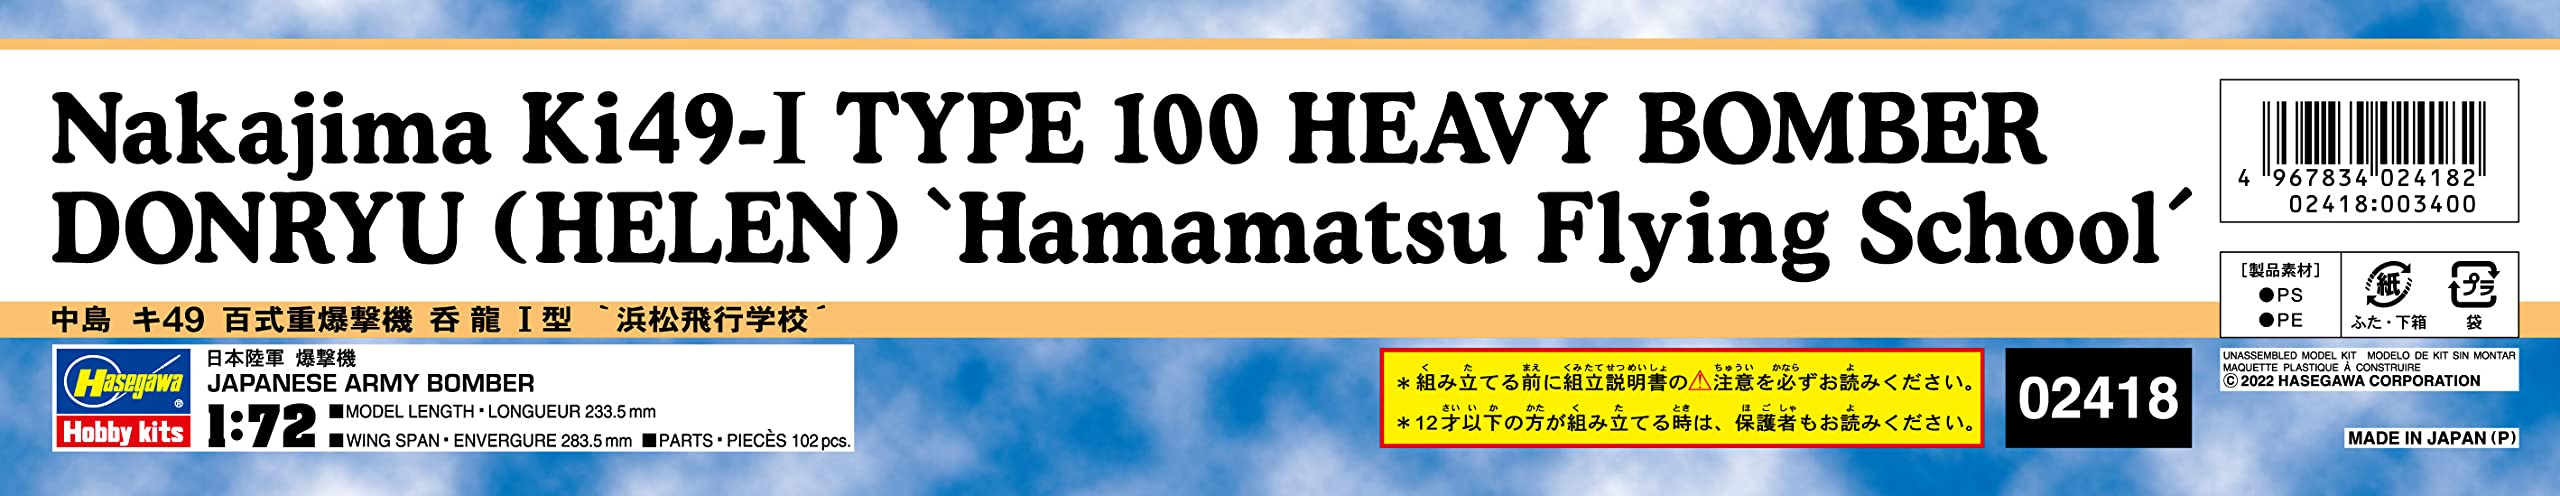 Hasegawa 1/72 Nakajima Ki49-I TYPE 100 HEAVY BOMBER DONRYU HELEN kit 02418 NEW_3